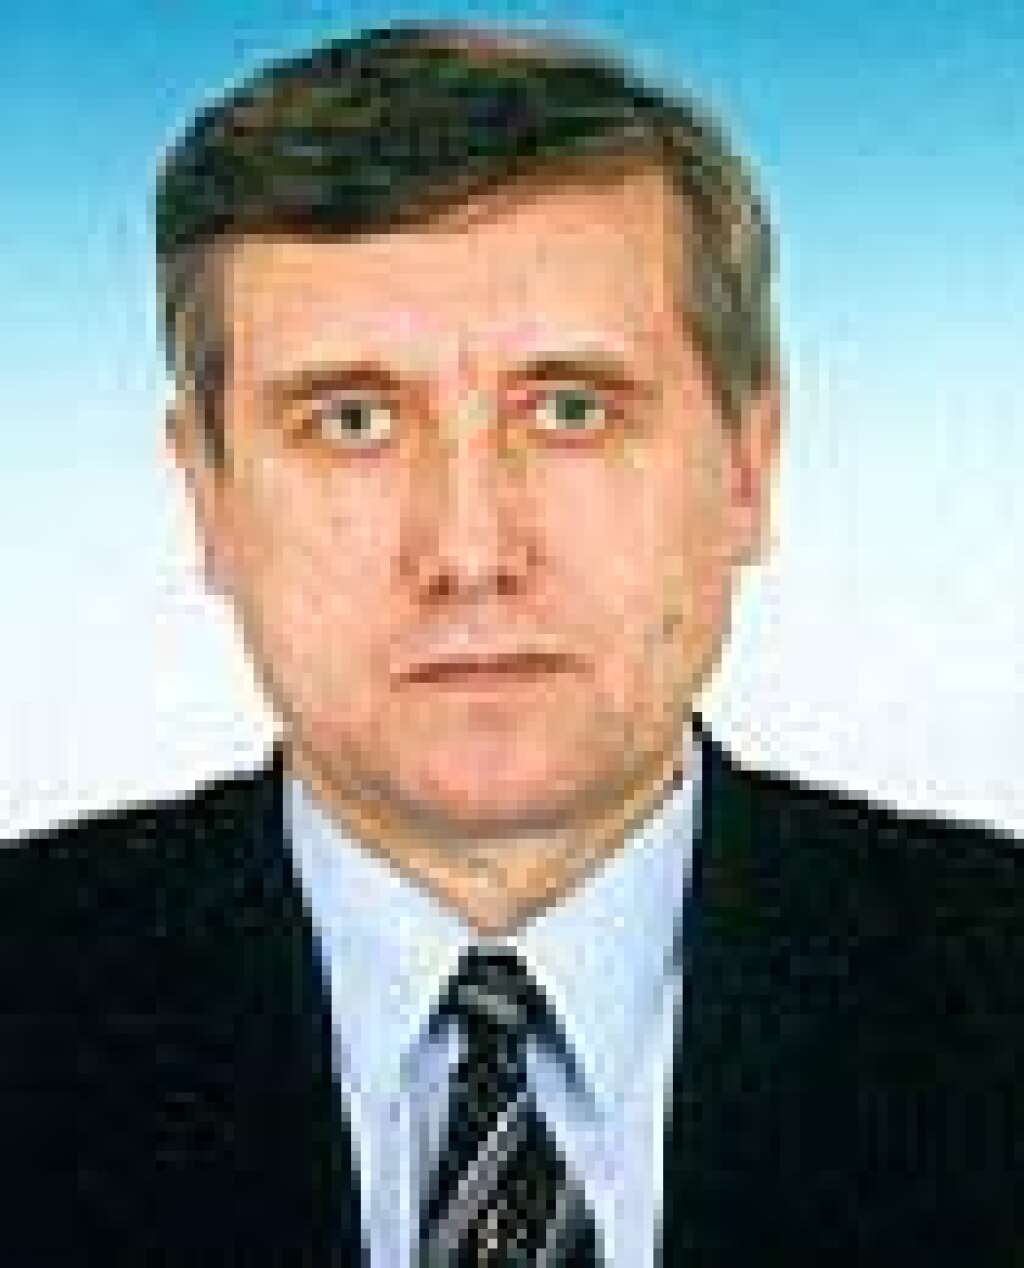 17 avril 2003 - Sergueï Iouchenkov - Le député et président du parti "Russie libérale" Sergueï Iouchenkov, 52 ans, ex-allié de l'oligarque Boris Berezovski, est abattu avec un pistolet muni d'un silencieux à l'entrée de son immeuble à Moscou.